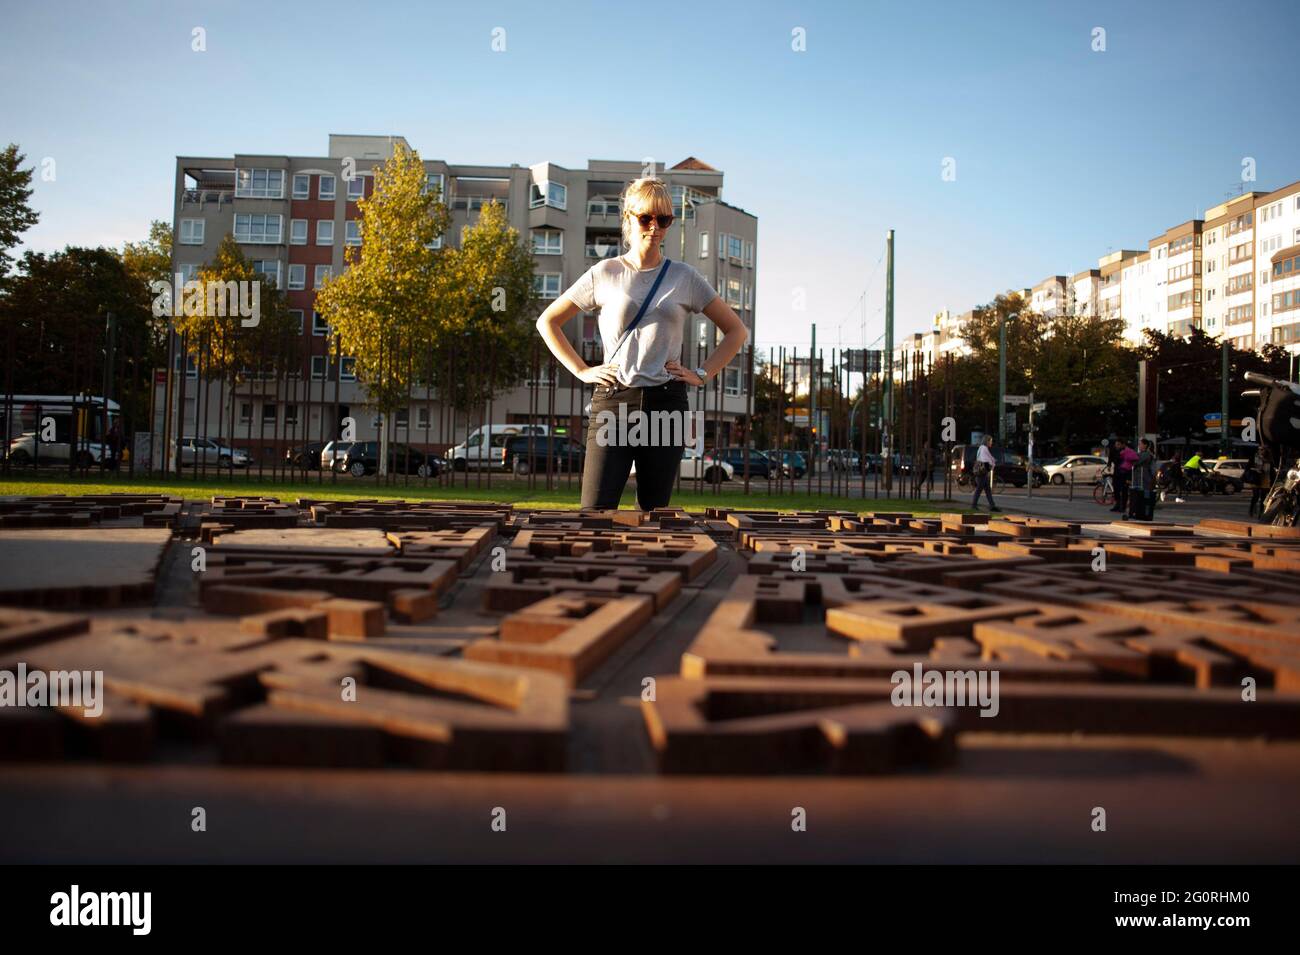 Una donna si trova in un parco a Berlino, in Germania, guardando una mappa 3D della zona e vedendo dove il Muro di Berlino ha diviso la città. Foto Stock